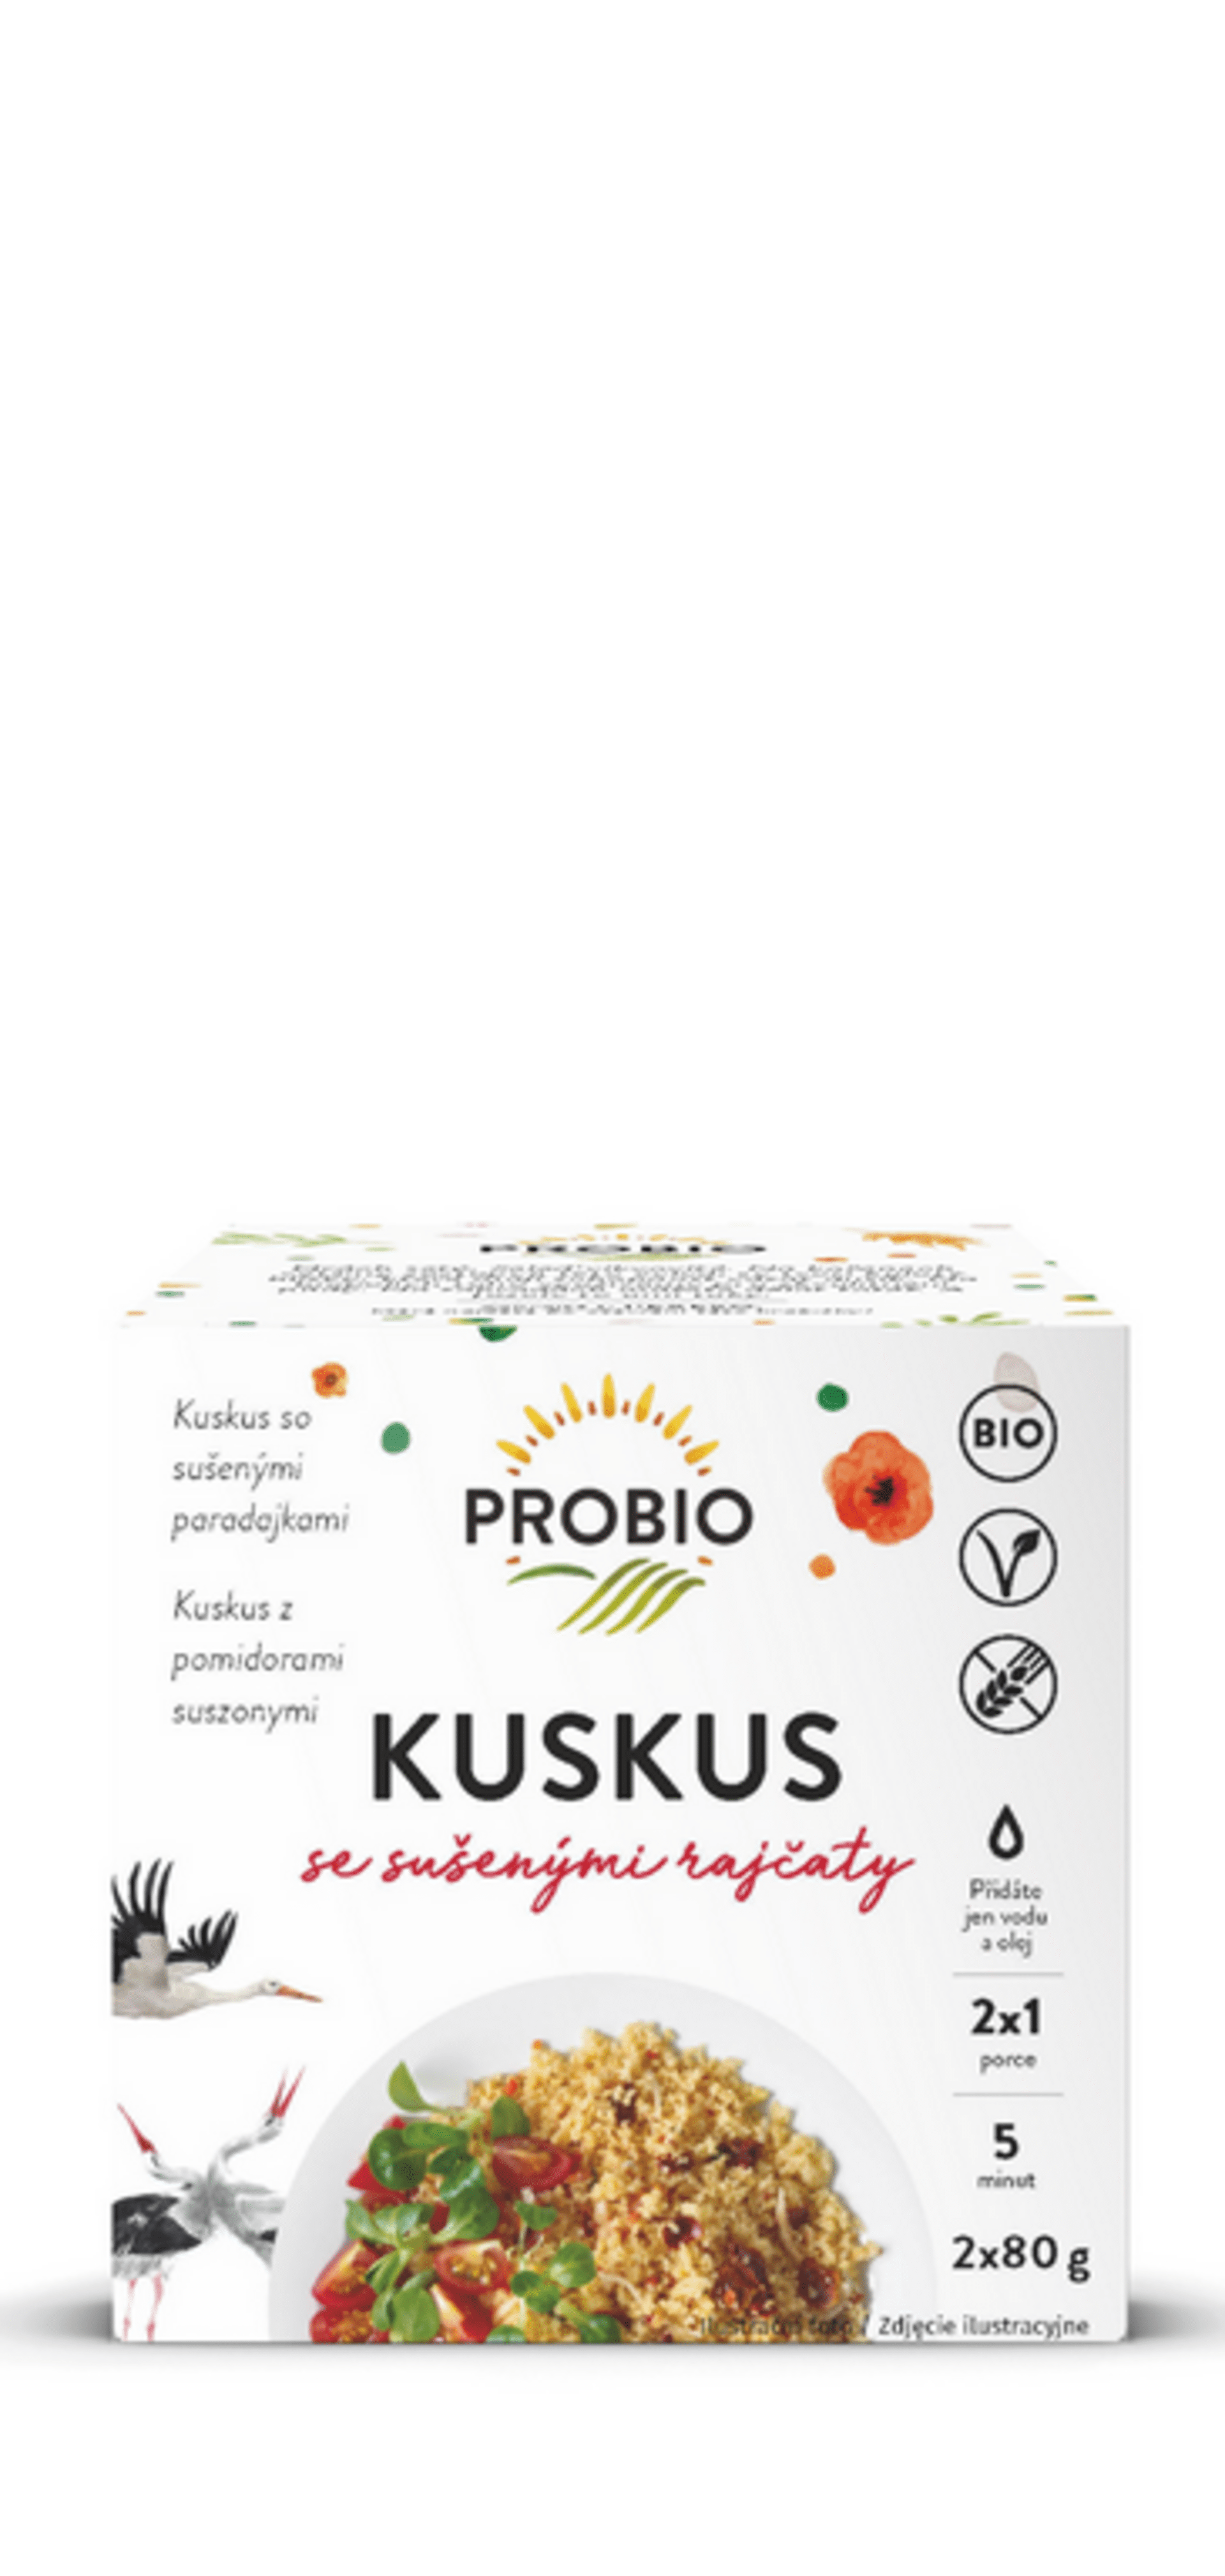 E-shop Probio Kuskus so sušenými paradajkami 2 x 80 g